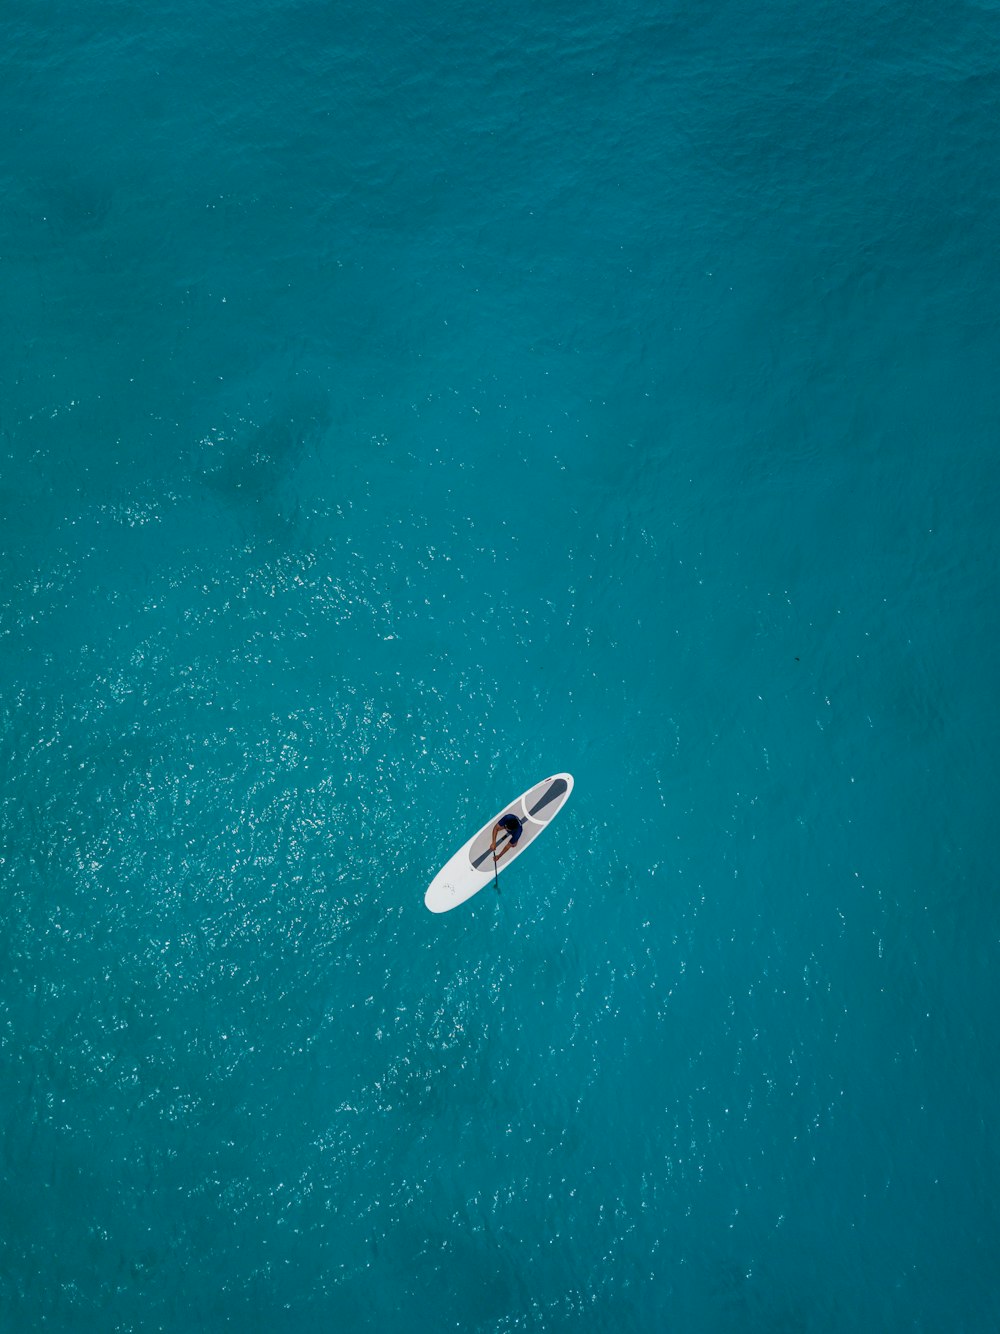 900 以上の海の背景画像 Unsplash で Hd 背景をダウンロード